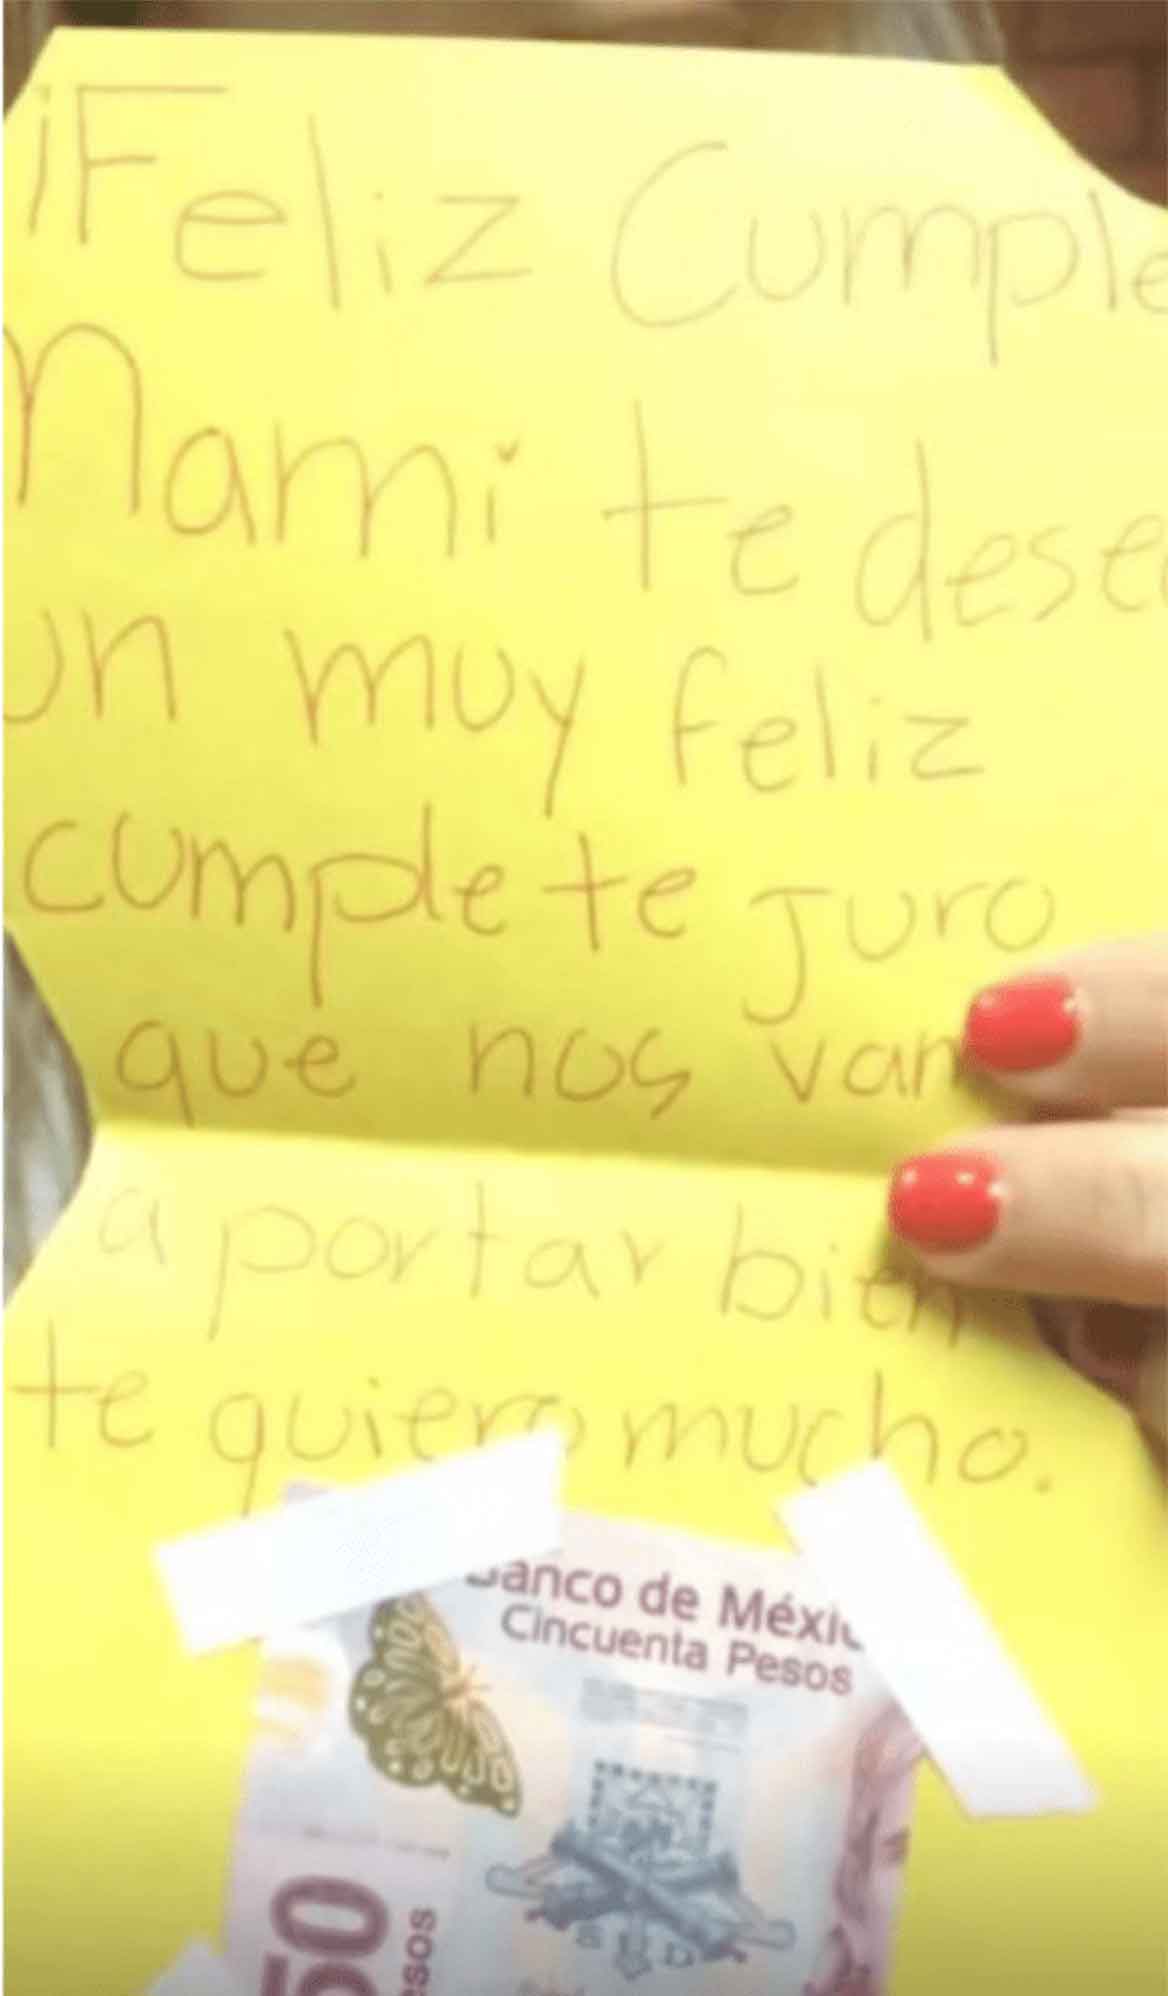 La hija de Karla Luna le entregó una carta y dinero